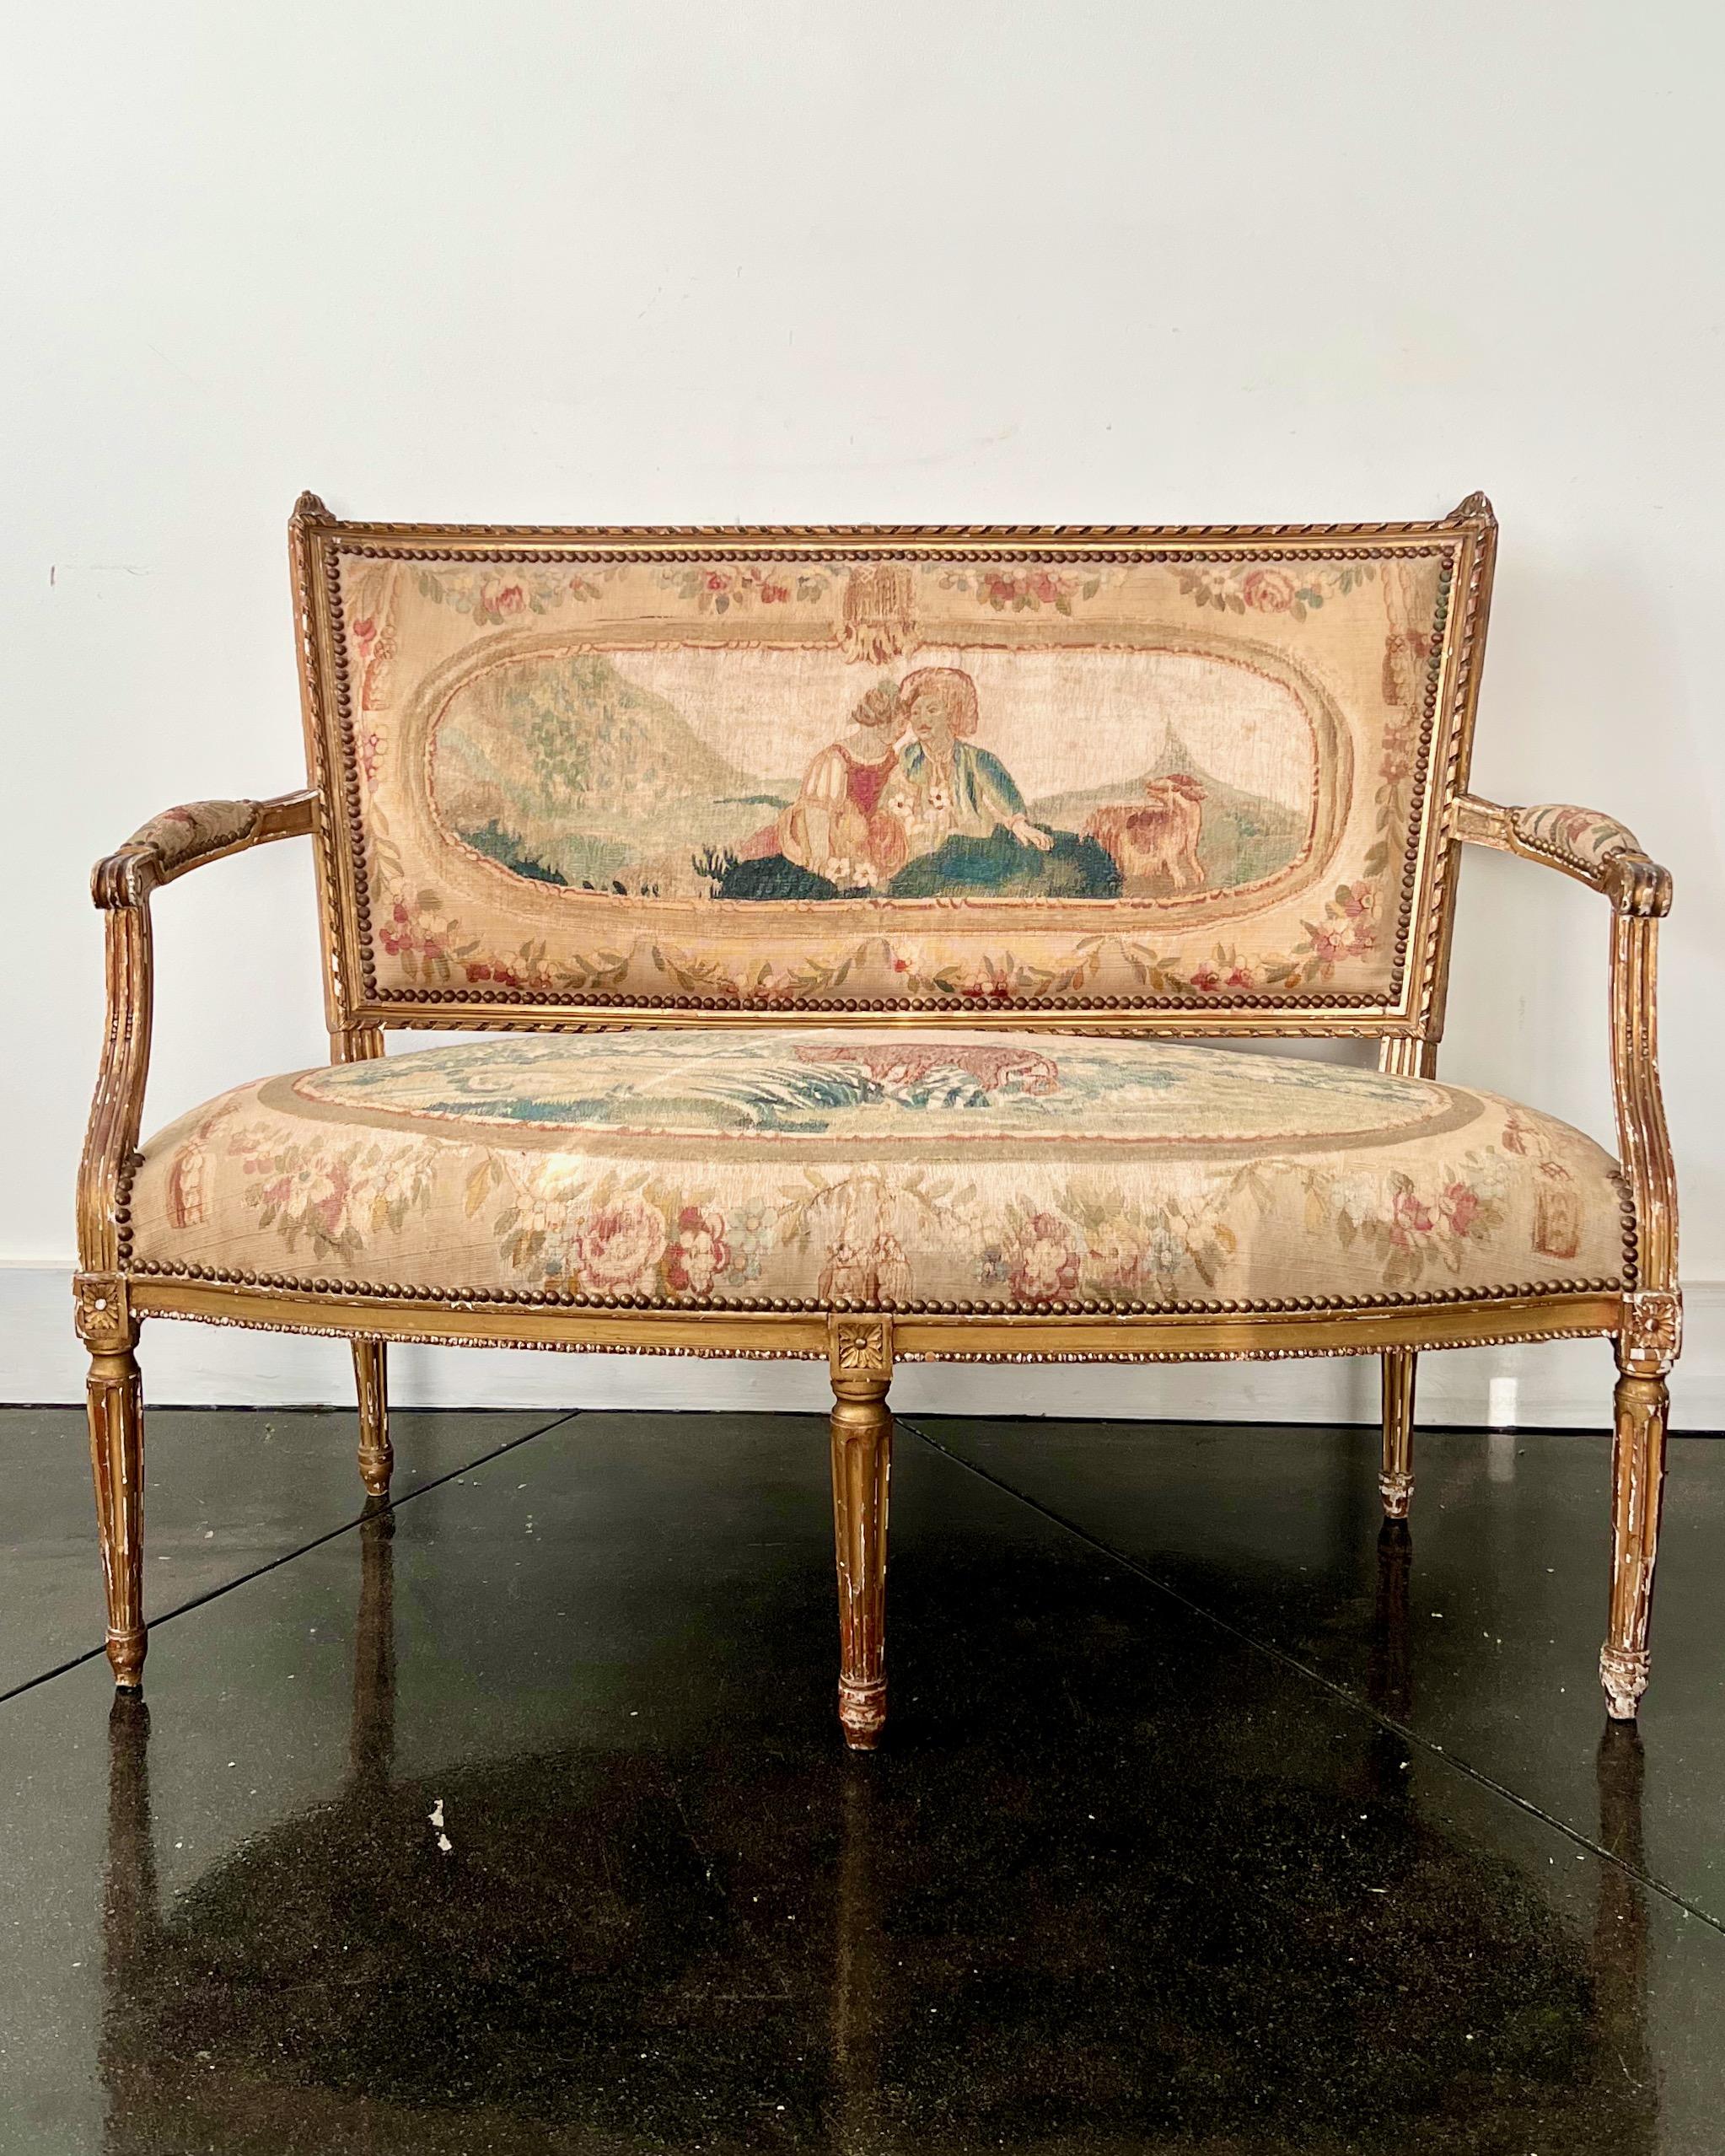 Charmantes kleines Sofa aus vergoldetem Holz aus dem 19. Jahrhundert, reich gepolstert mit handgewebtem Aubusson-Wandteppich.